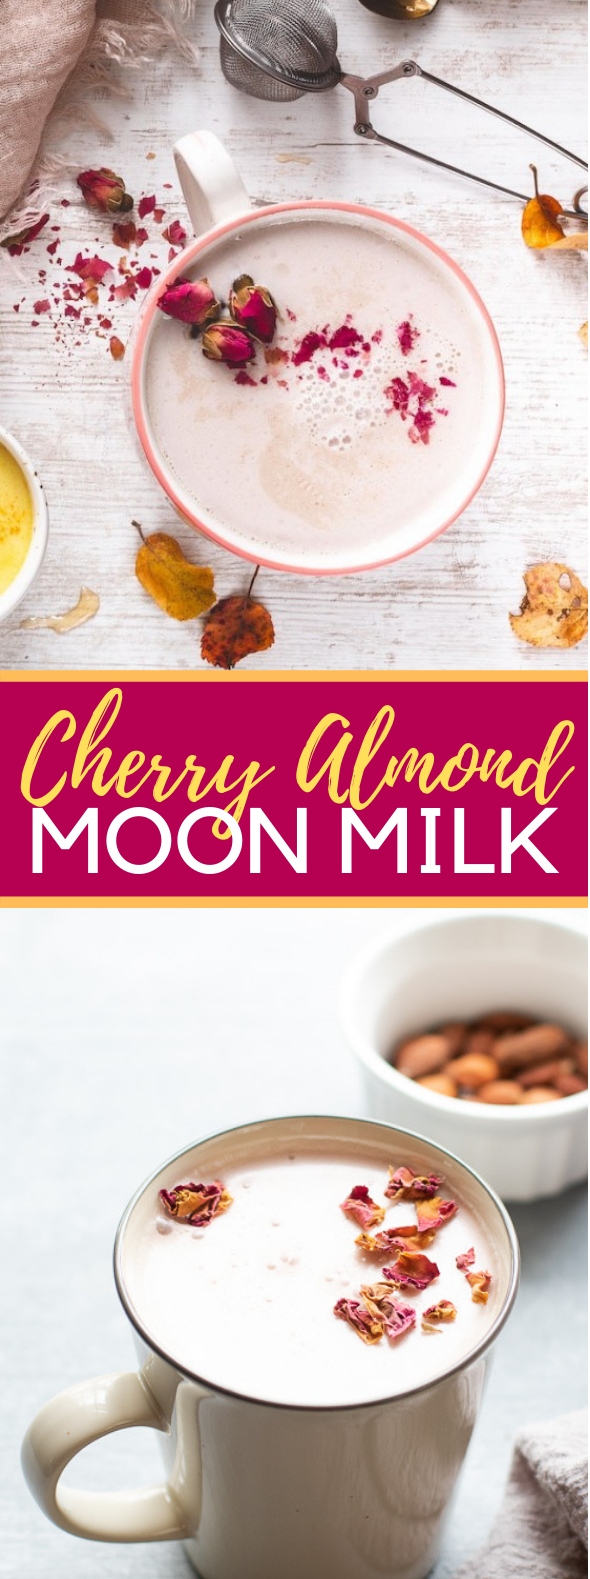 Cherry Almond Moon Milk #drinks #glutenfree